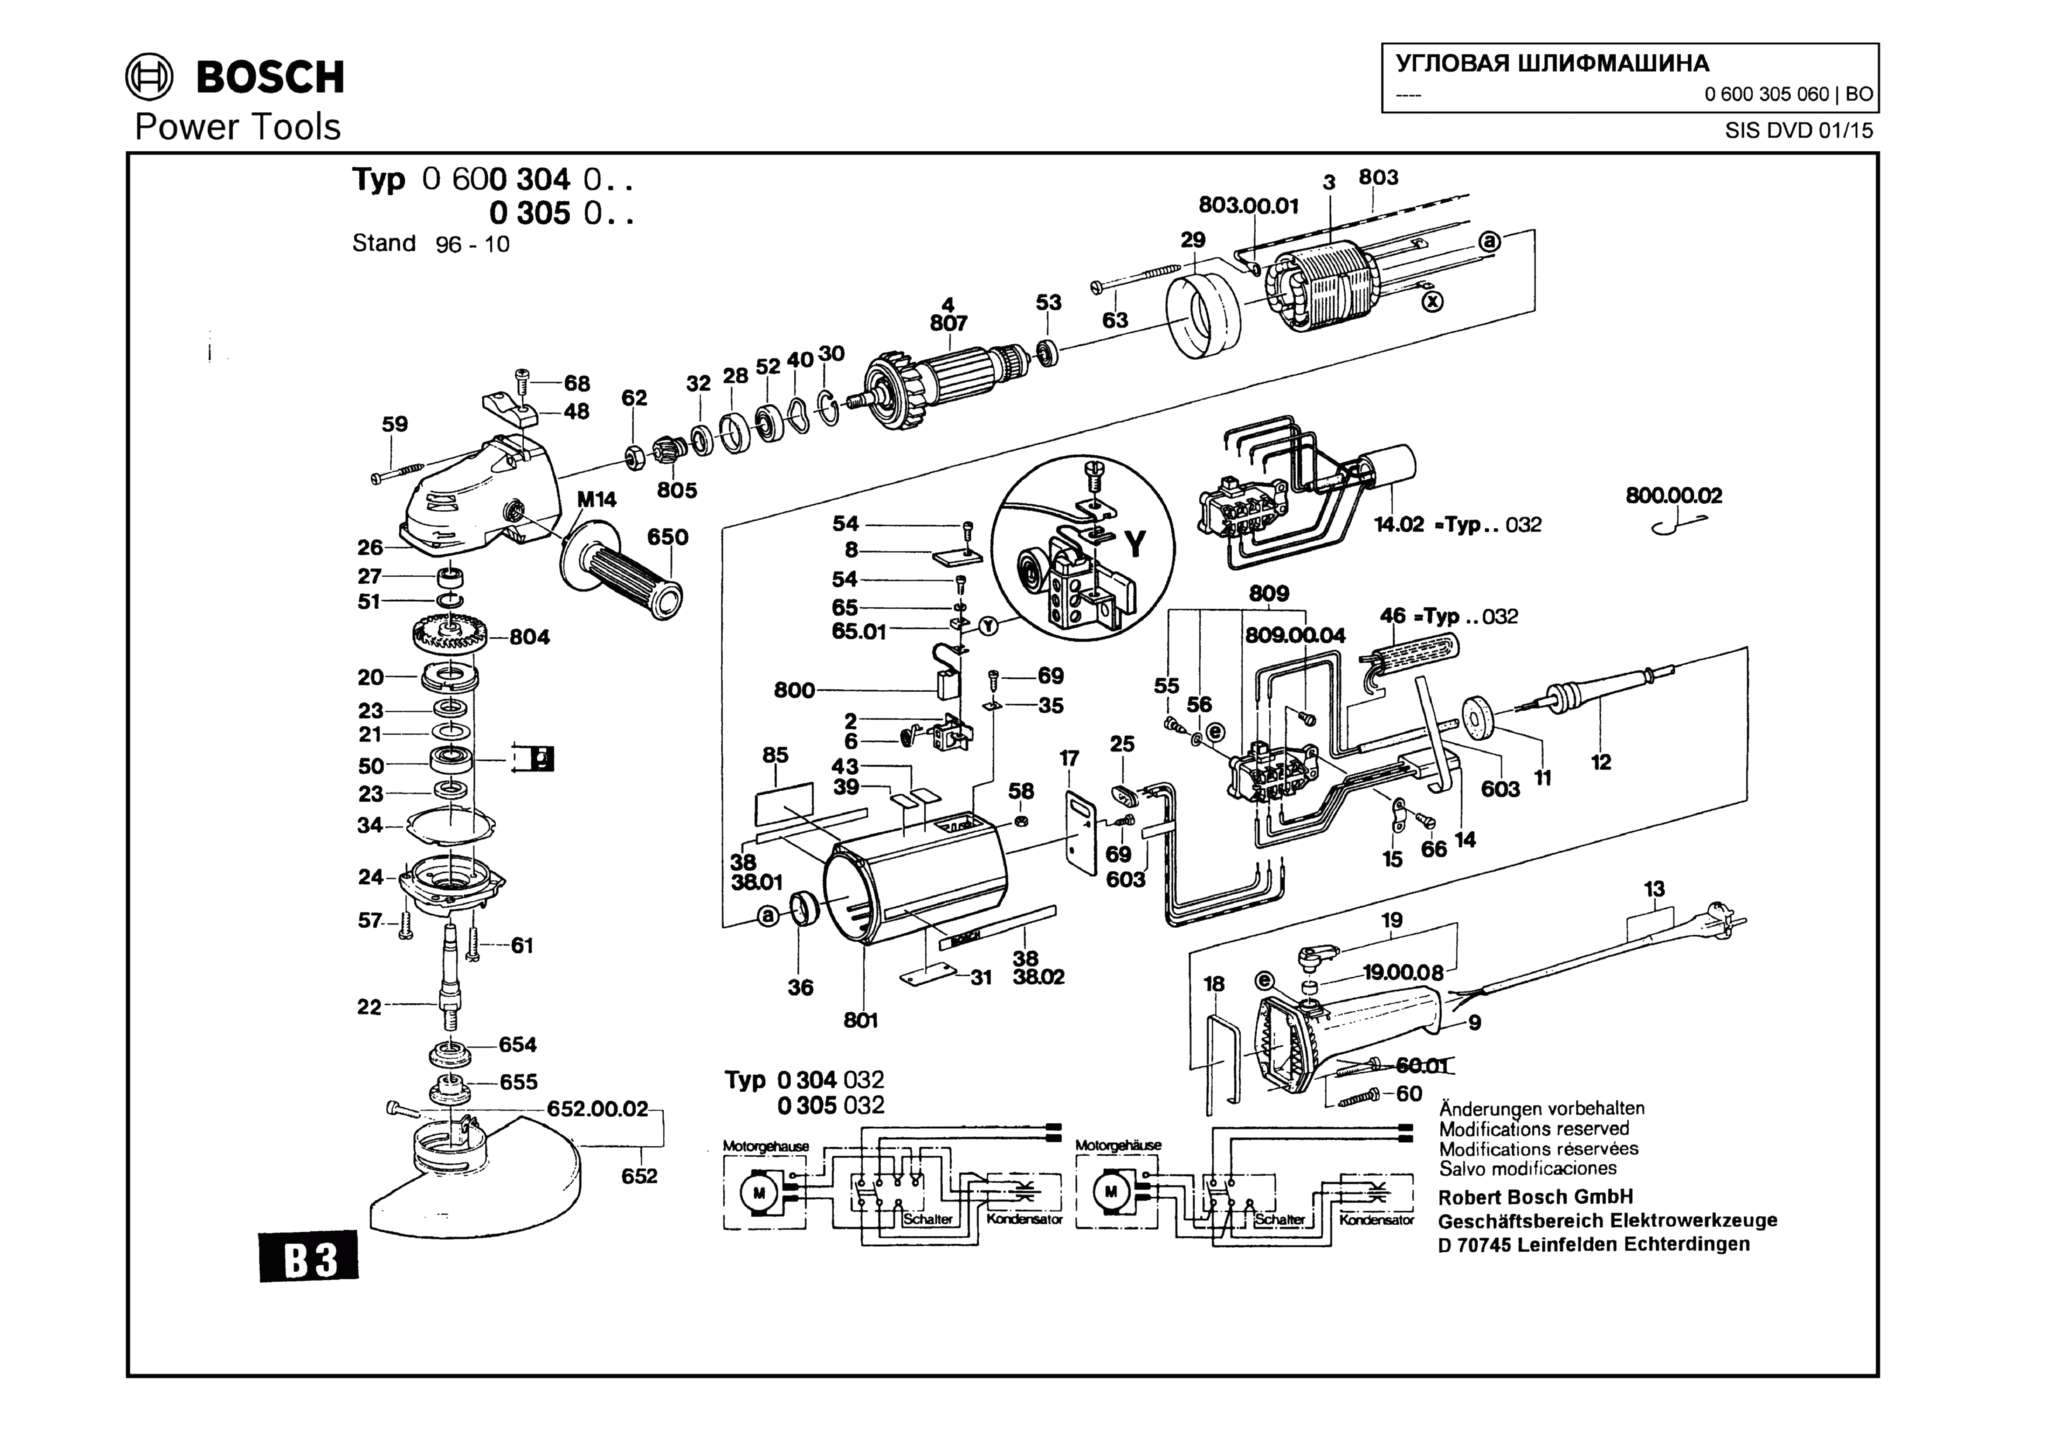 Запчасти, схема и деталировка Bosch (ТИП 0600305060)